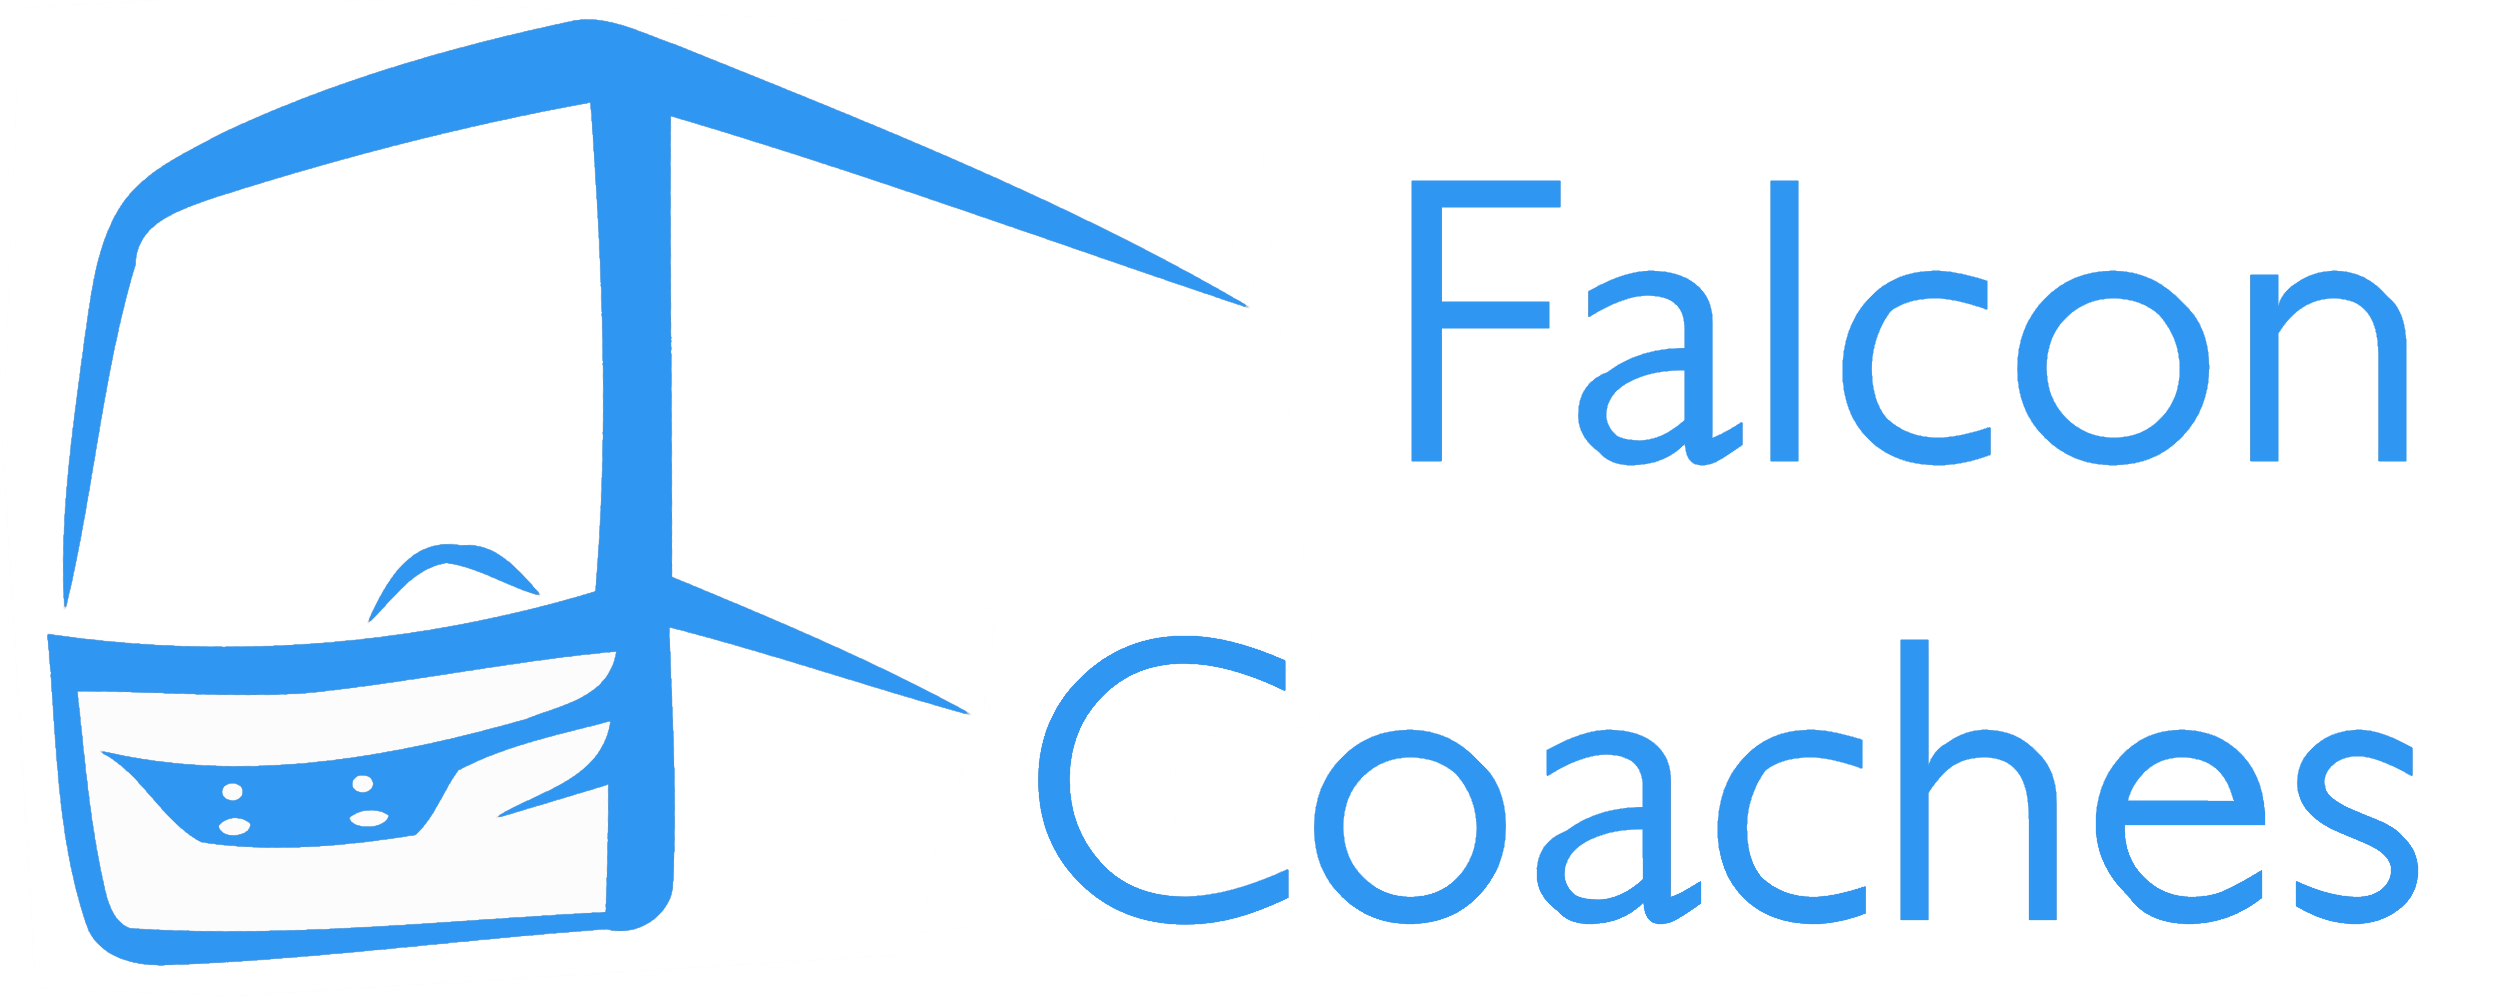 Falcon Coaches